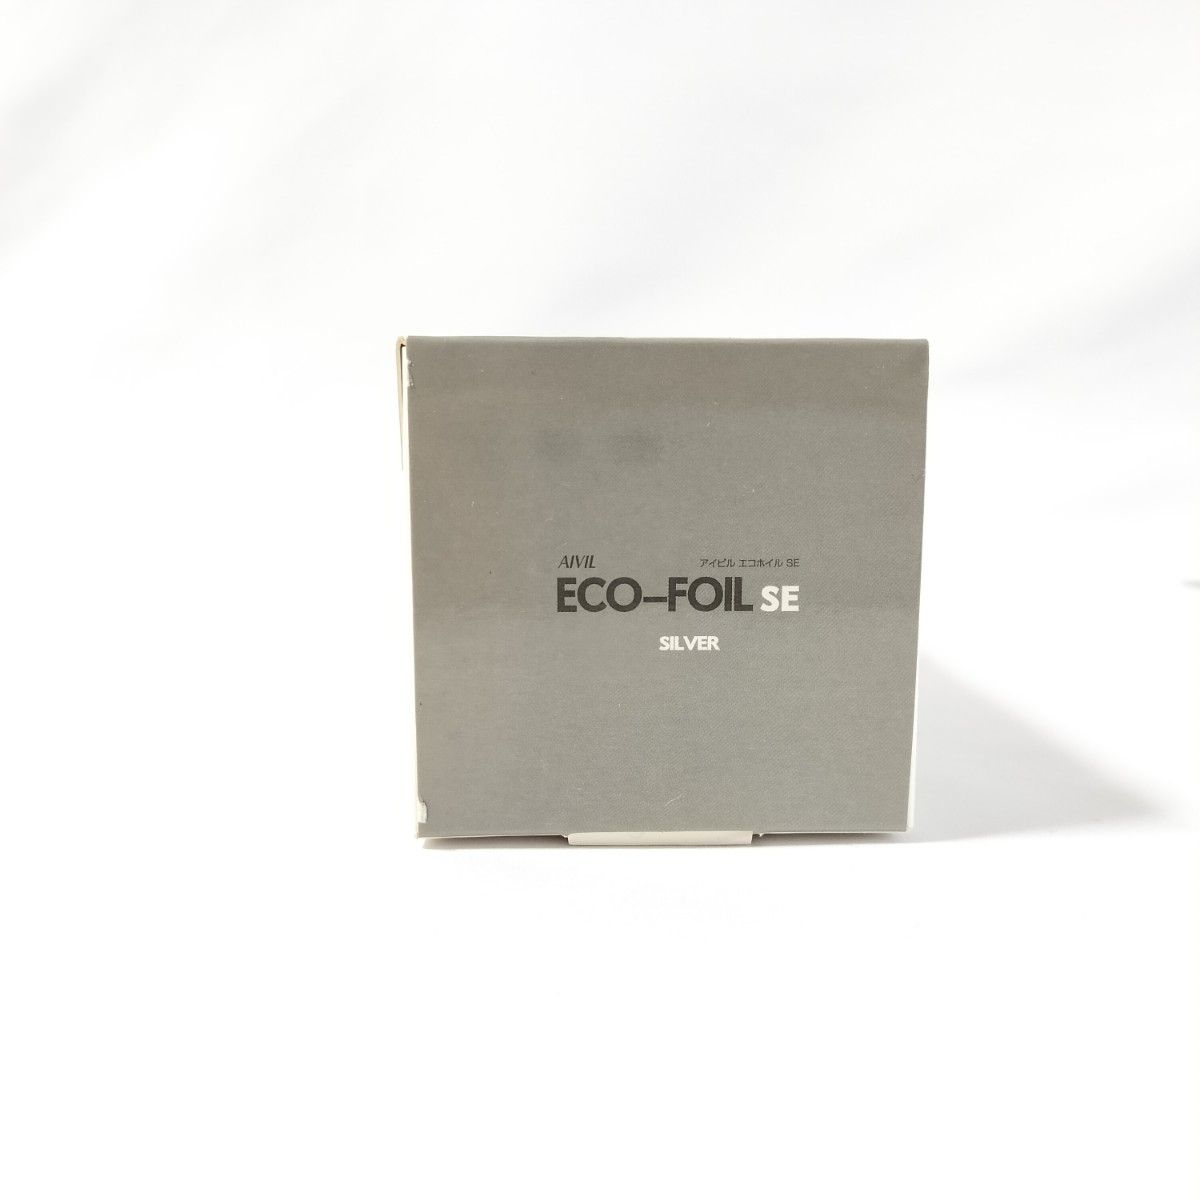 【新品未使用】アイビル エコホイル SE 100m ホイル 美容室 AIVIL ECO FOIL SE シルバー 